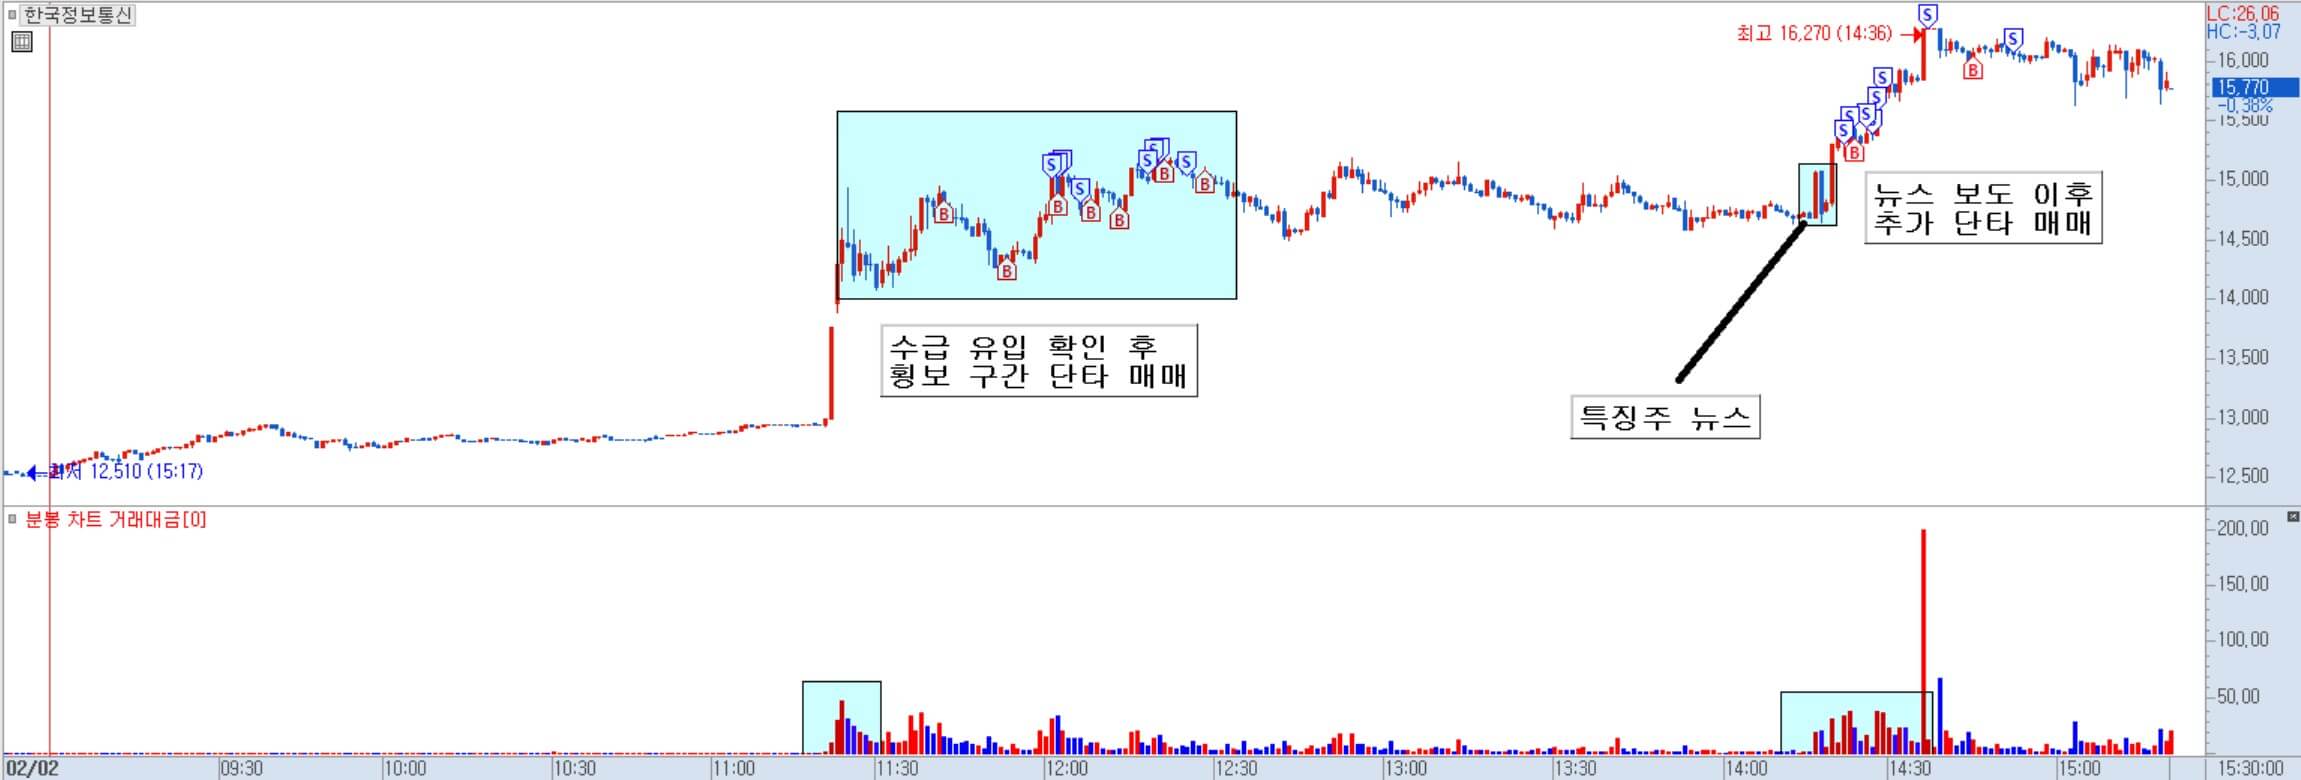 한국정보통신 분봉 차트